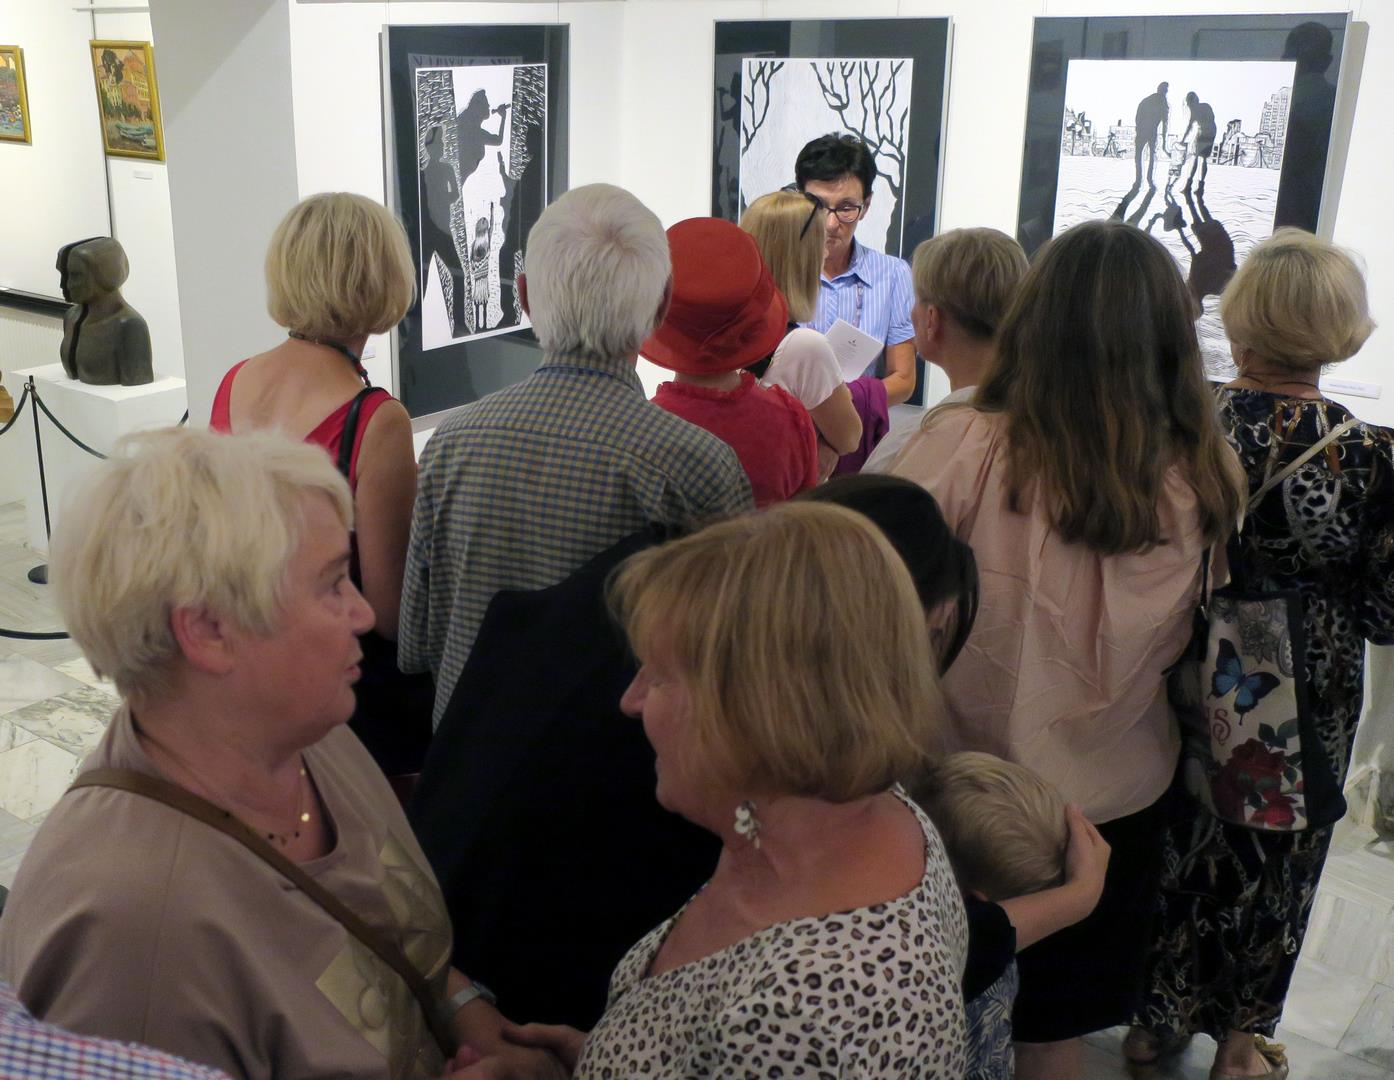 Goście zwiedzający salę ekspozycyjną z powieszonymi na ścianach pracami graficznymi.